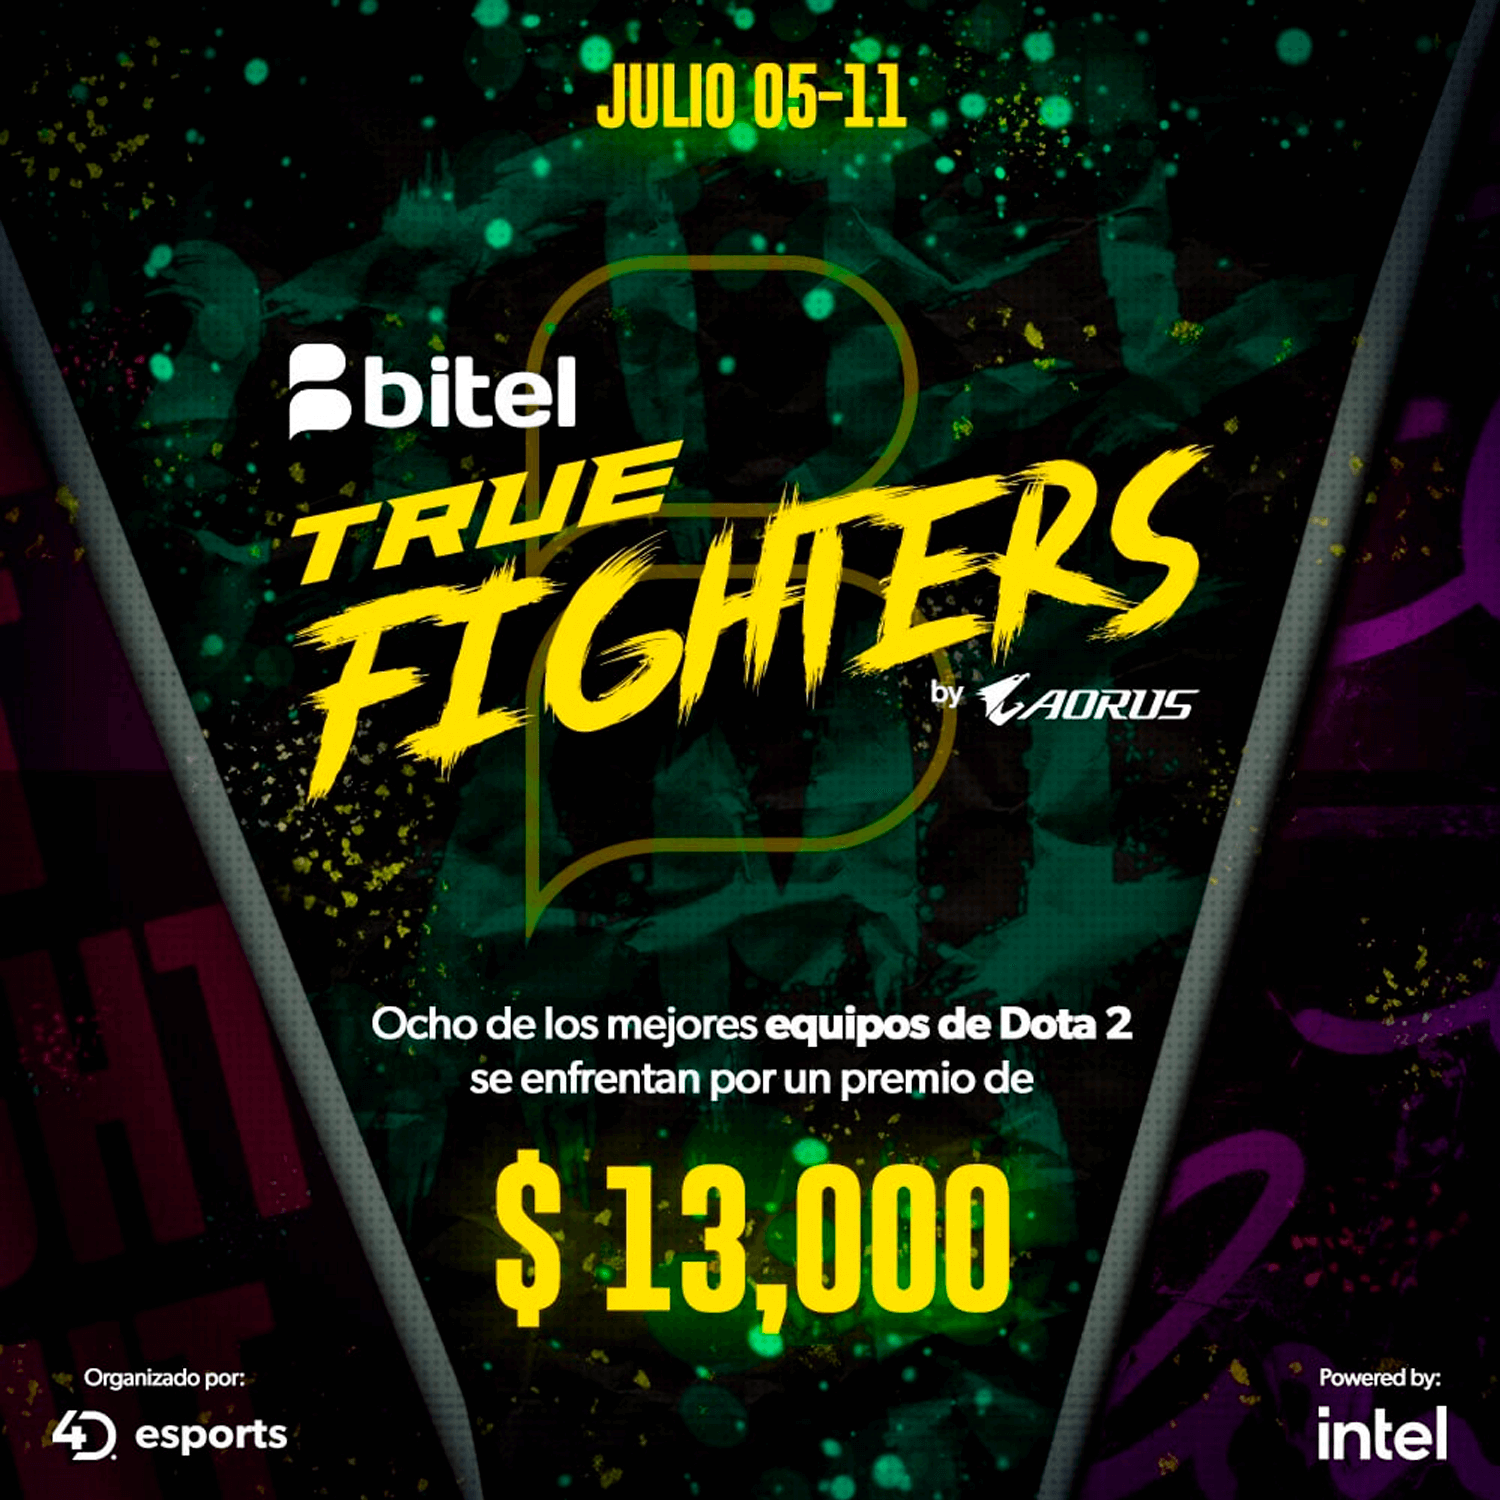 Bitel True Fighters: Conoce a los 8 equipos participantes del torneo